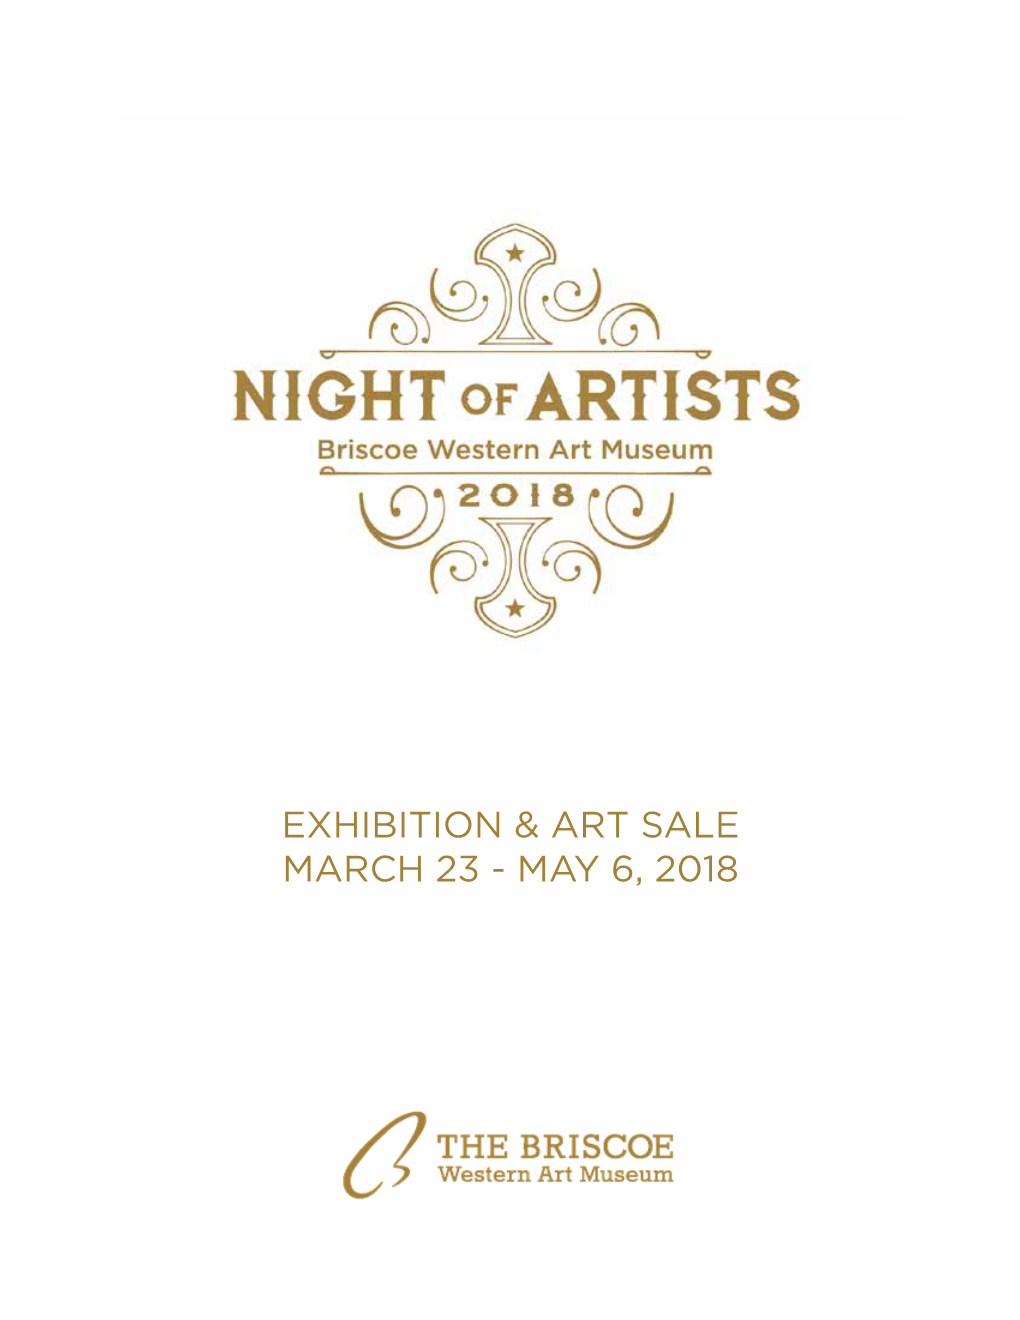 Exhibition & Art Sale March 23